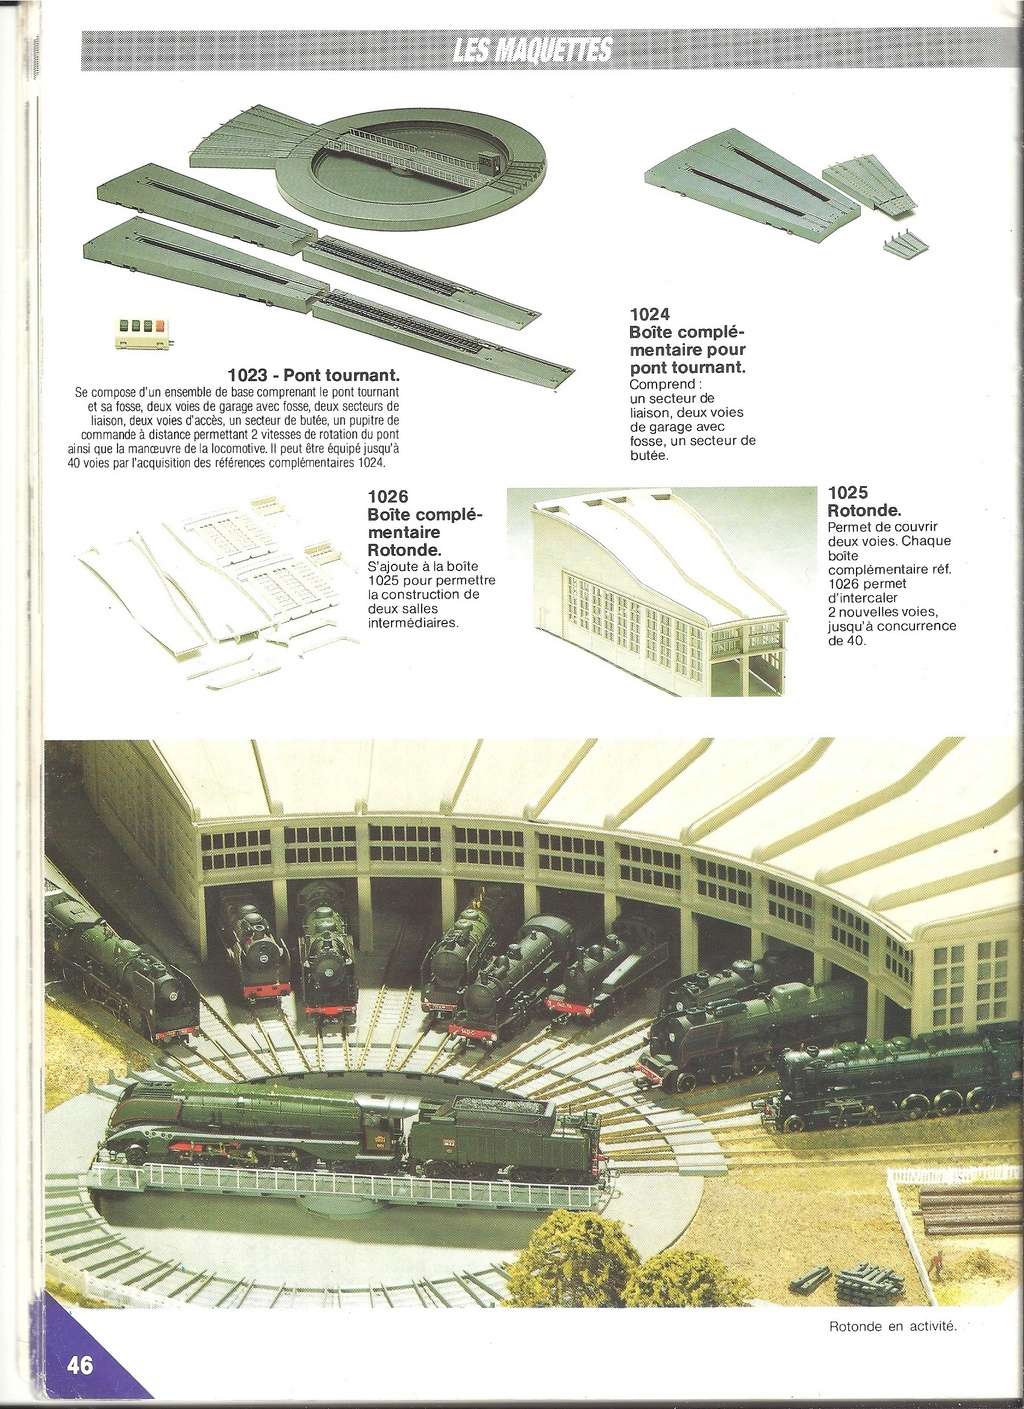 [JOUEF 1989] Catalogue 1989 Jouef257